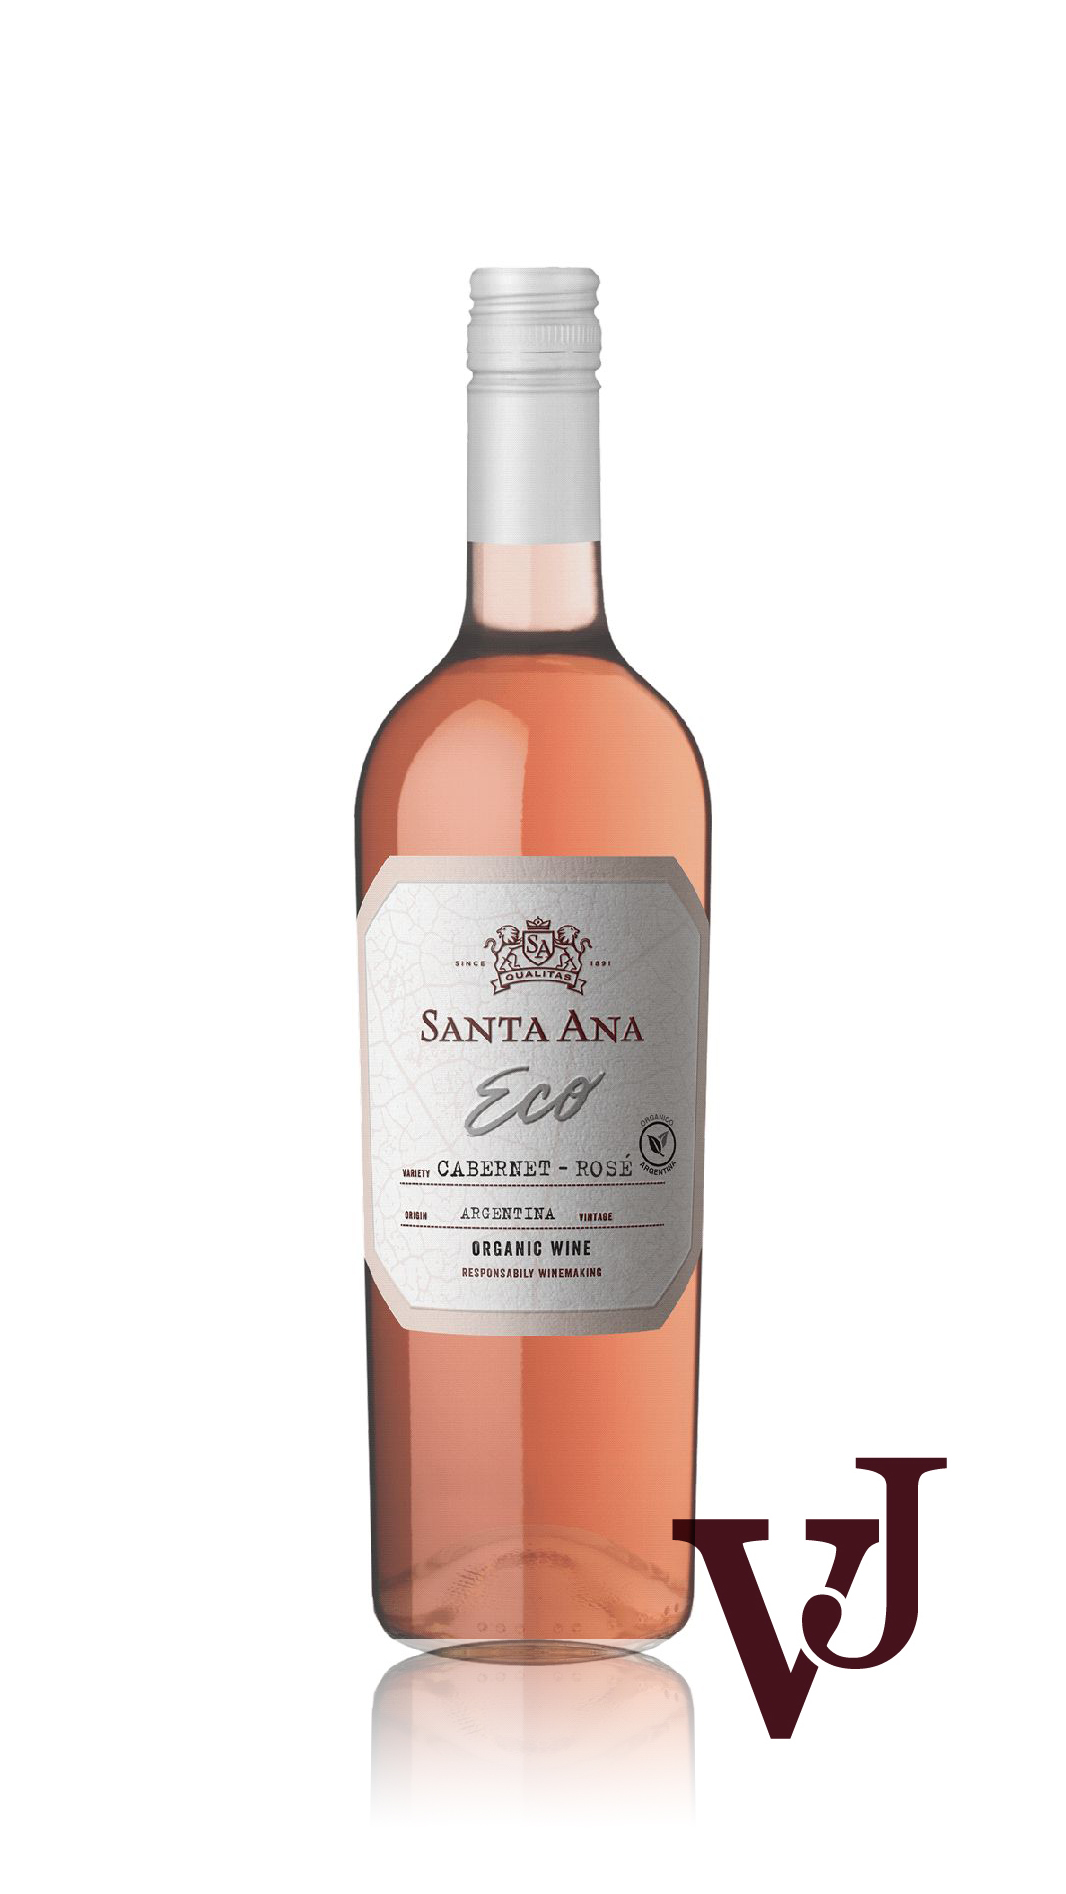 Rosé Vin - Santa Ana Organic Cabernet Sauvignon Rosé artikel nummer 692101 från producenten Bodegas Santa Ana från området Argentina